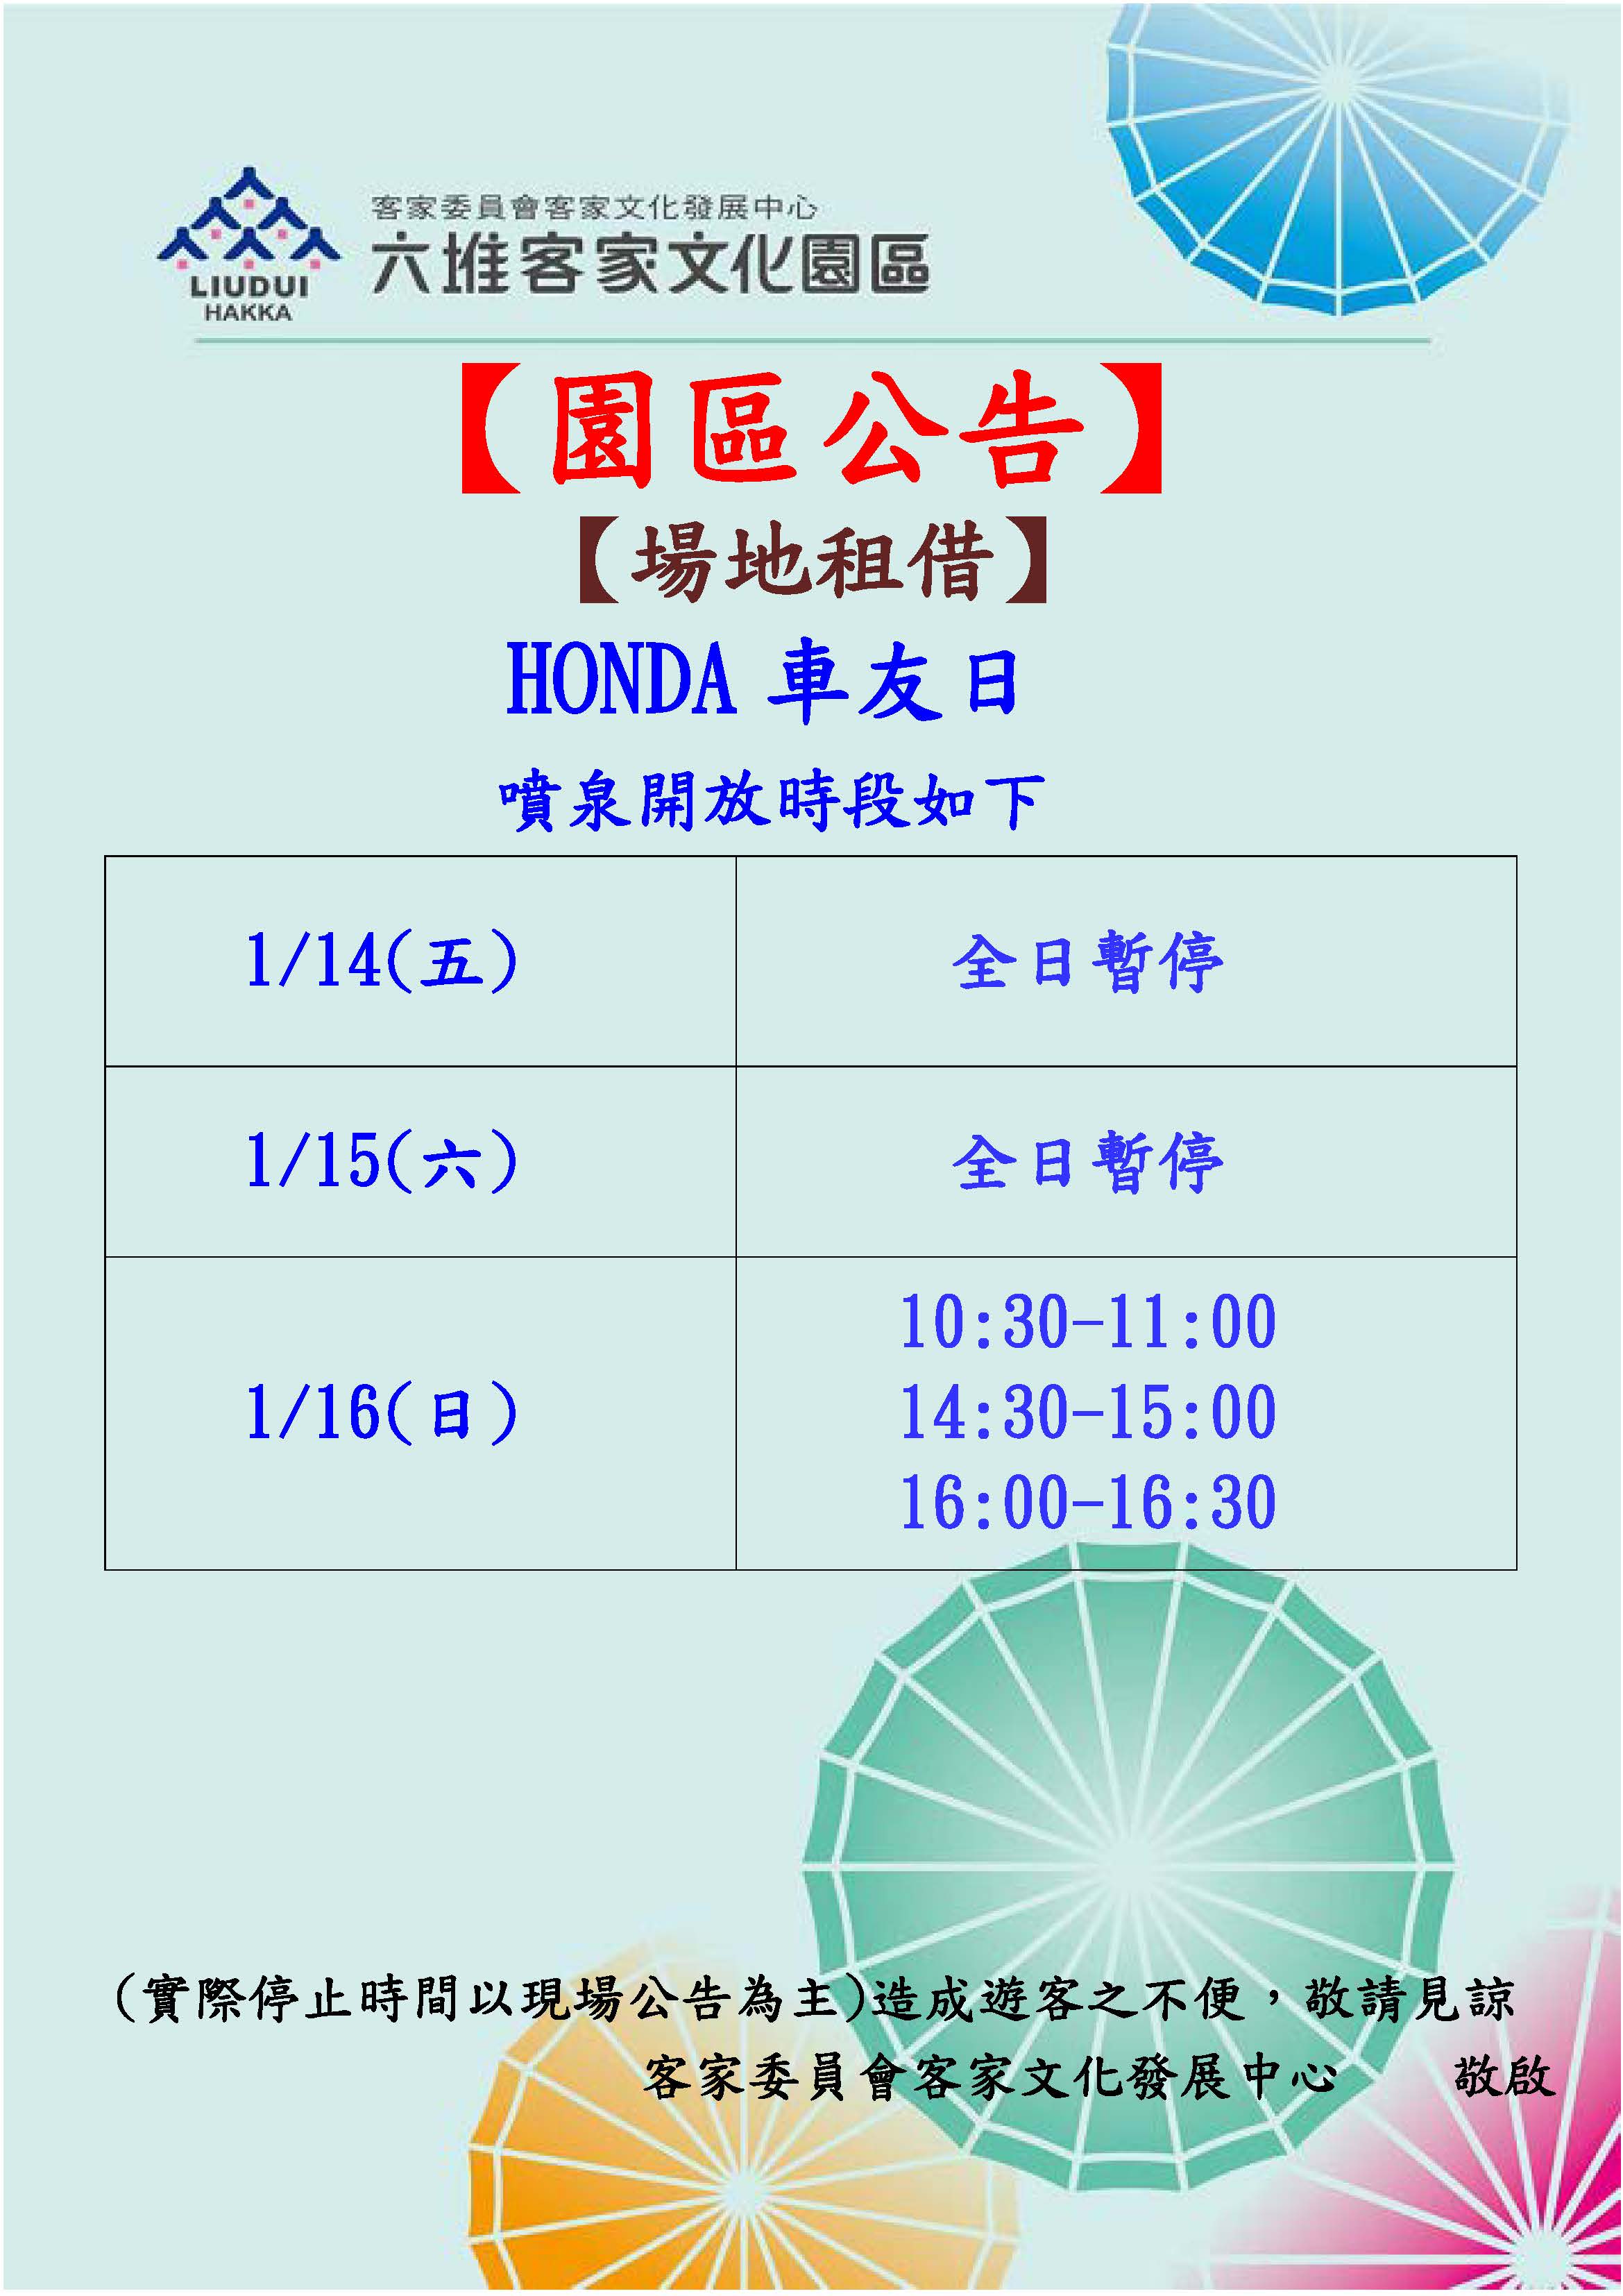 111年1月14日(五)至1月16日(日) (HONDA車友日)噴泉廣場暫停開放公告 展示圖